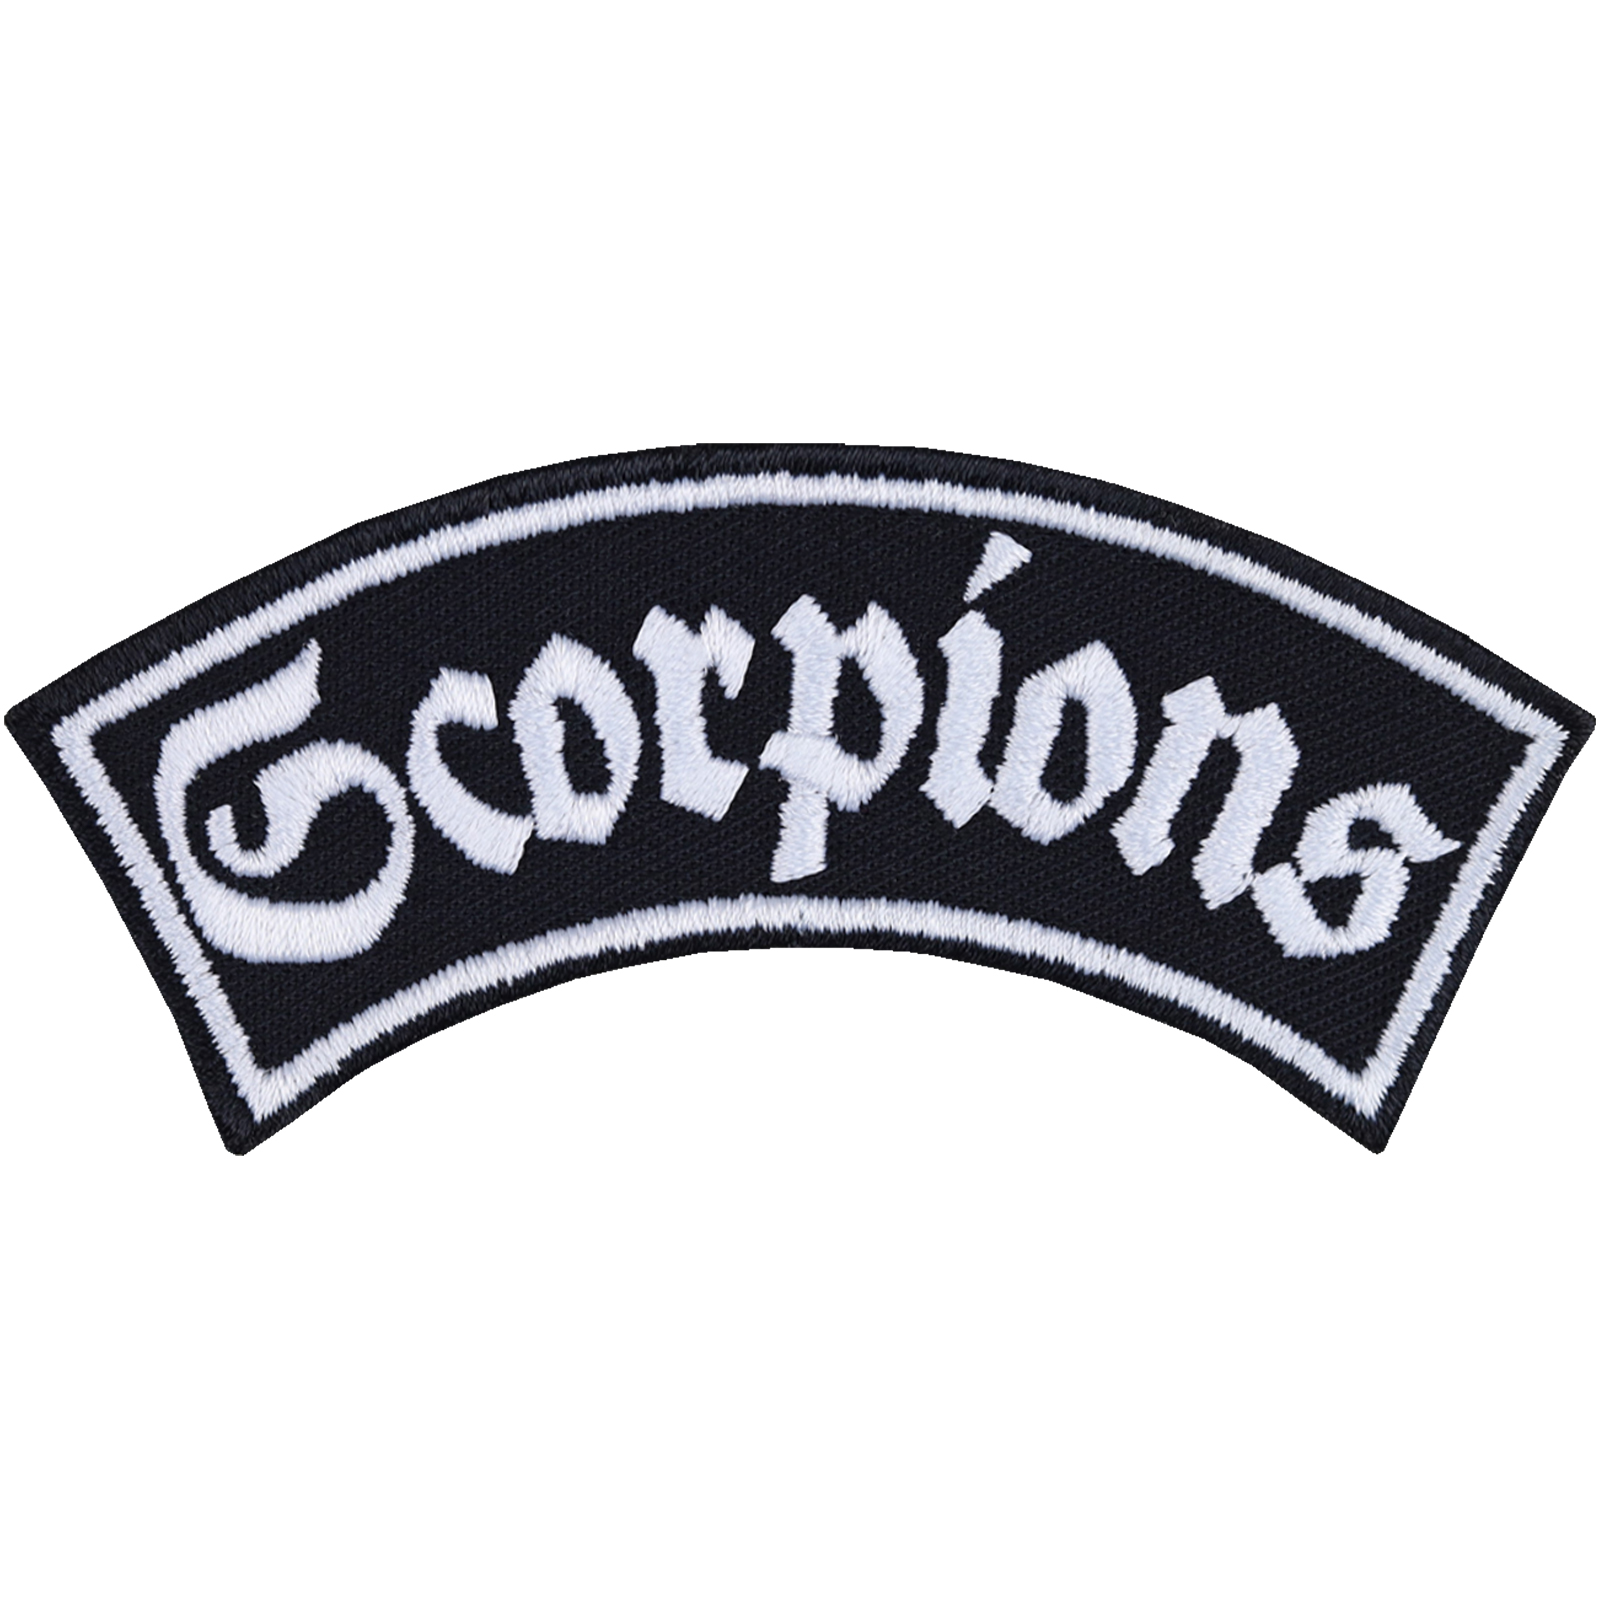 Scorpions - Patch